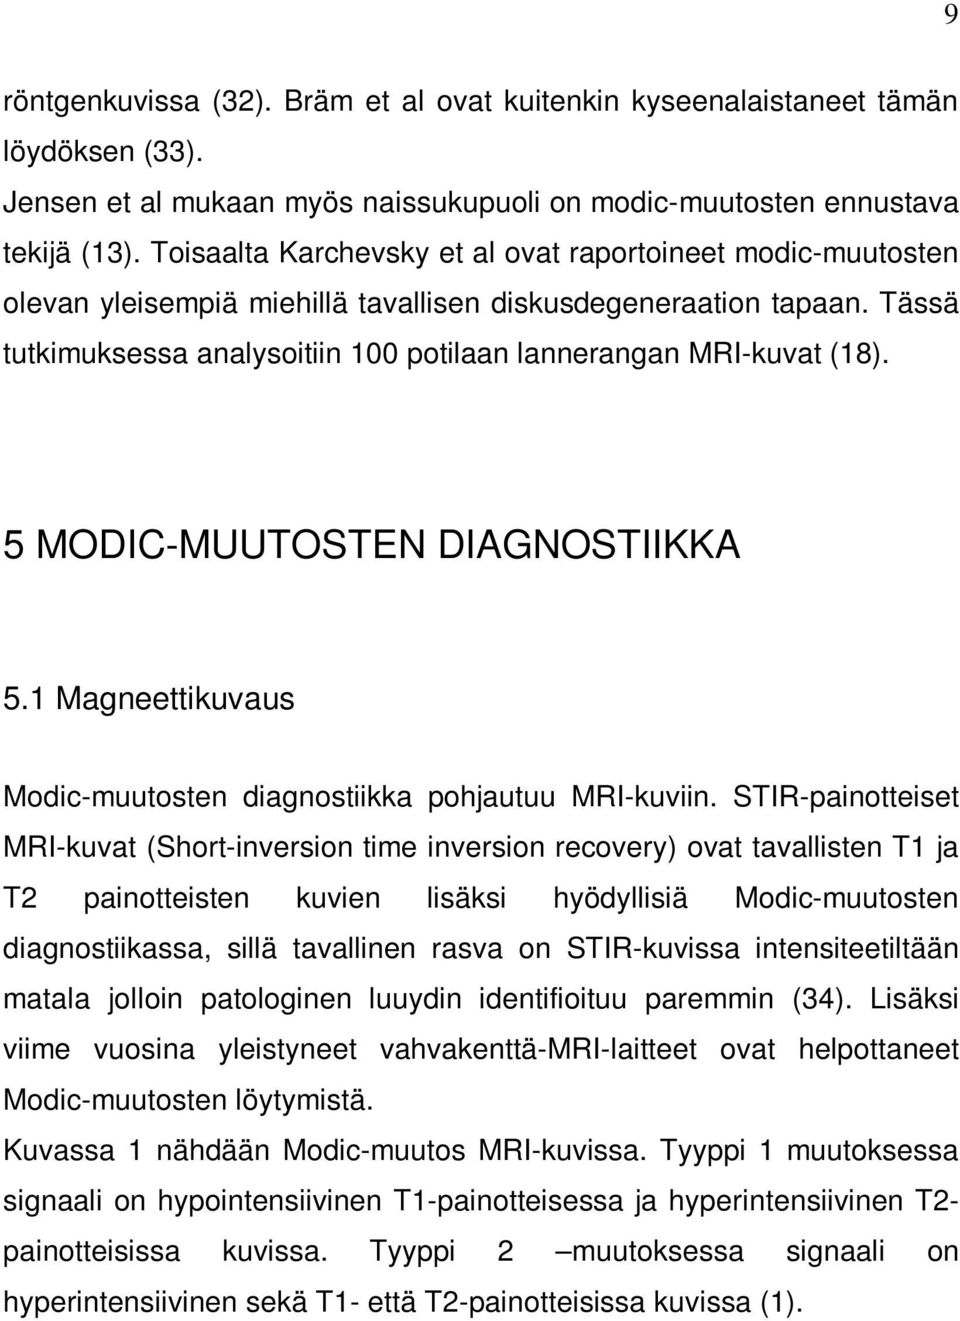 5 MODIC-MUUTOSTEN DIAGNOSTIIKKA 5.1 Magneettikuvaus Modic-muutosten diagnostiikka pohjautuu MRI-kuviin.